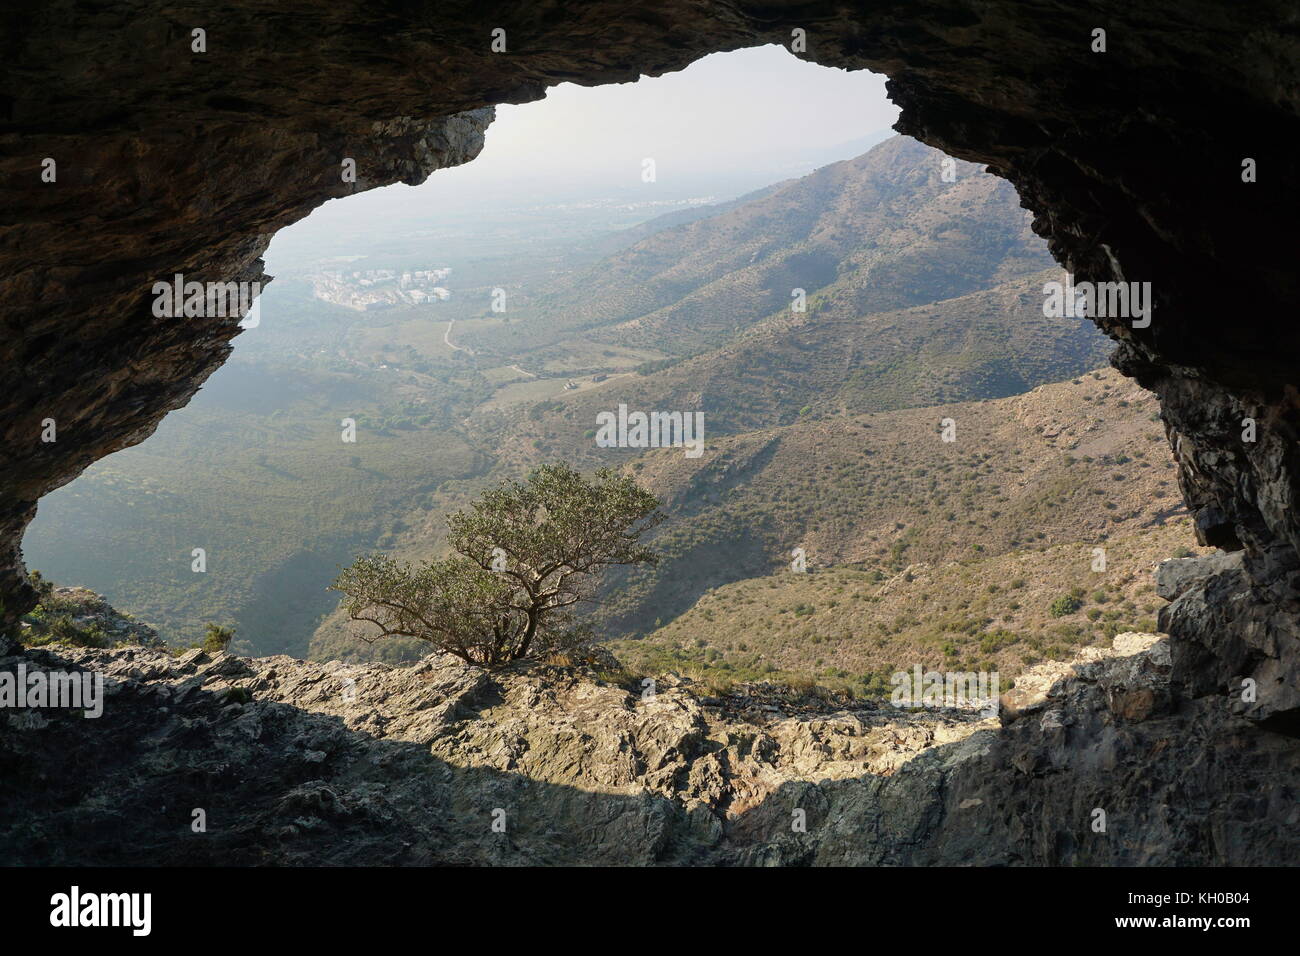 Vista di una valle dall'interno di una grotta nei pressi della città di Roses, alt emporda, Girona, Catalogna, Spagna Foto Stock